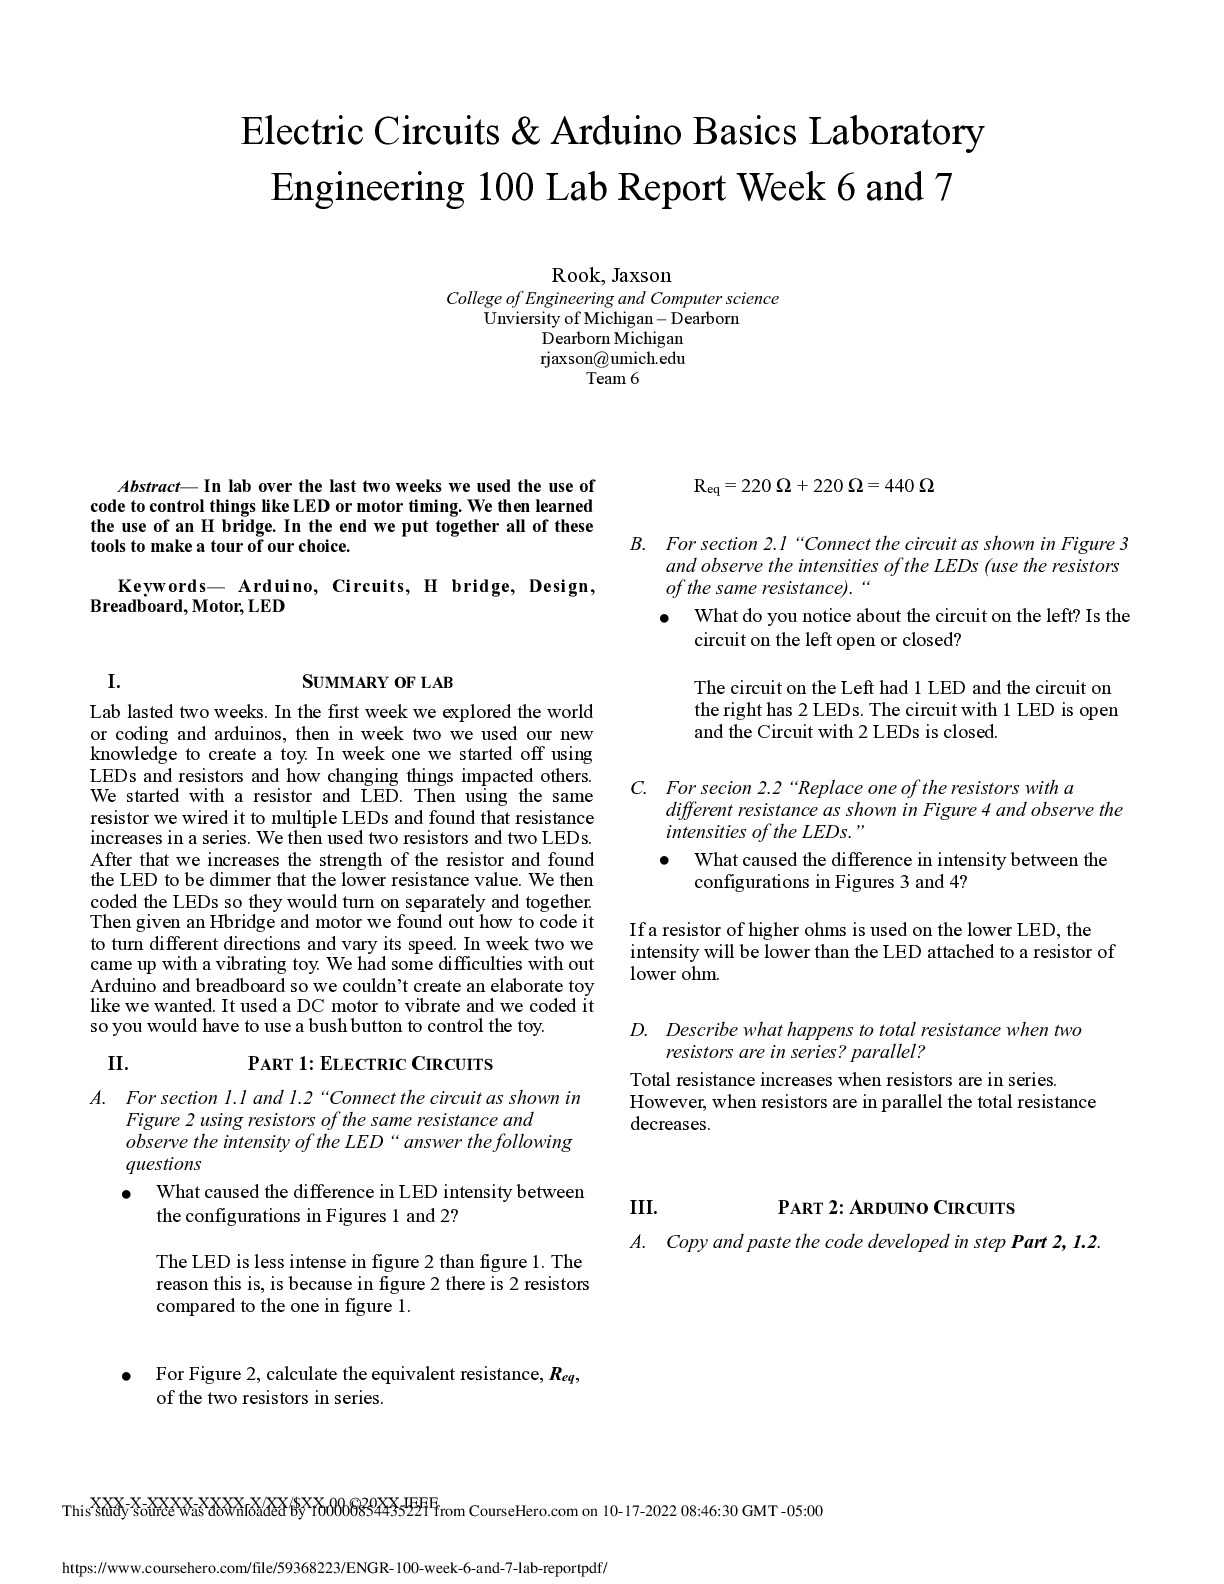 ENGR_100_week_6_and_7_lab_report.pdf (2)